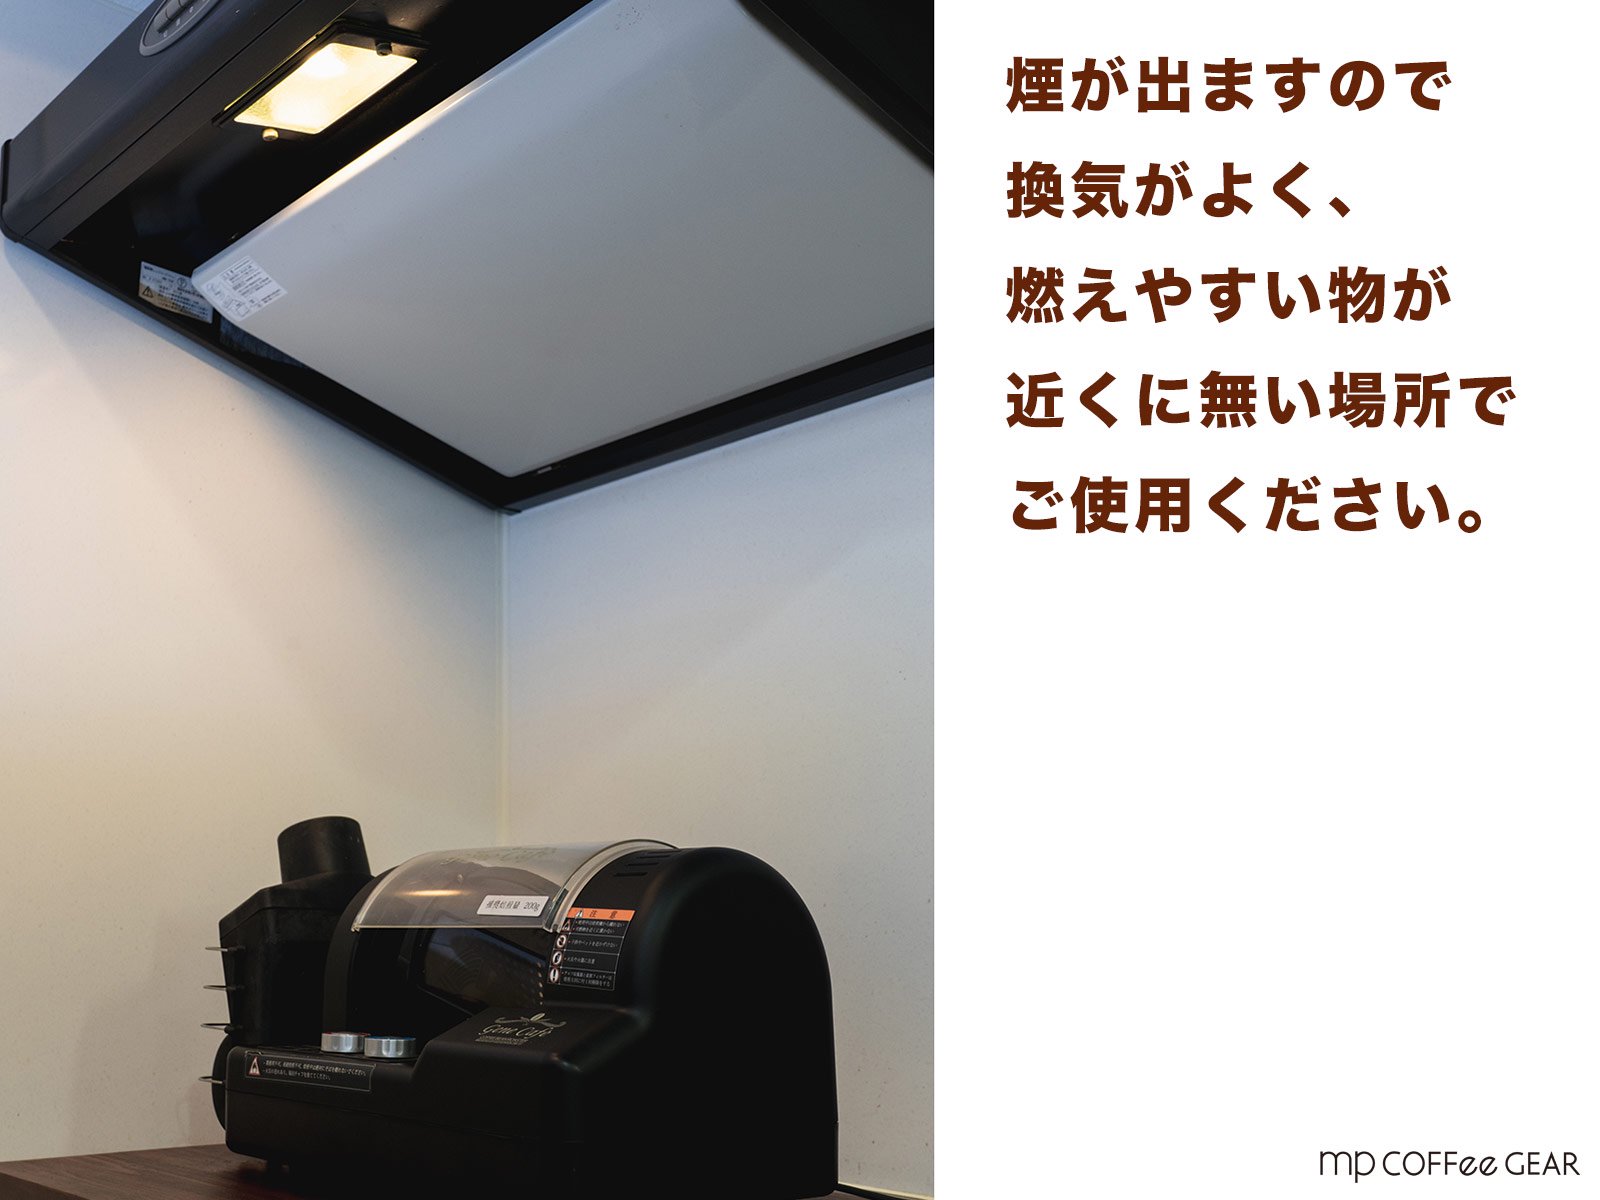 44352円 豊富な品 電動焙煎機 GENE CAFE ジェネカフェ ブラック CBR-101A